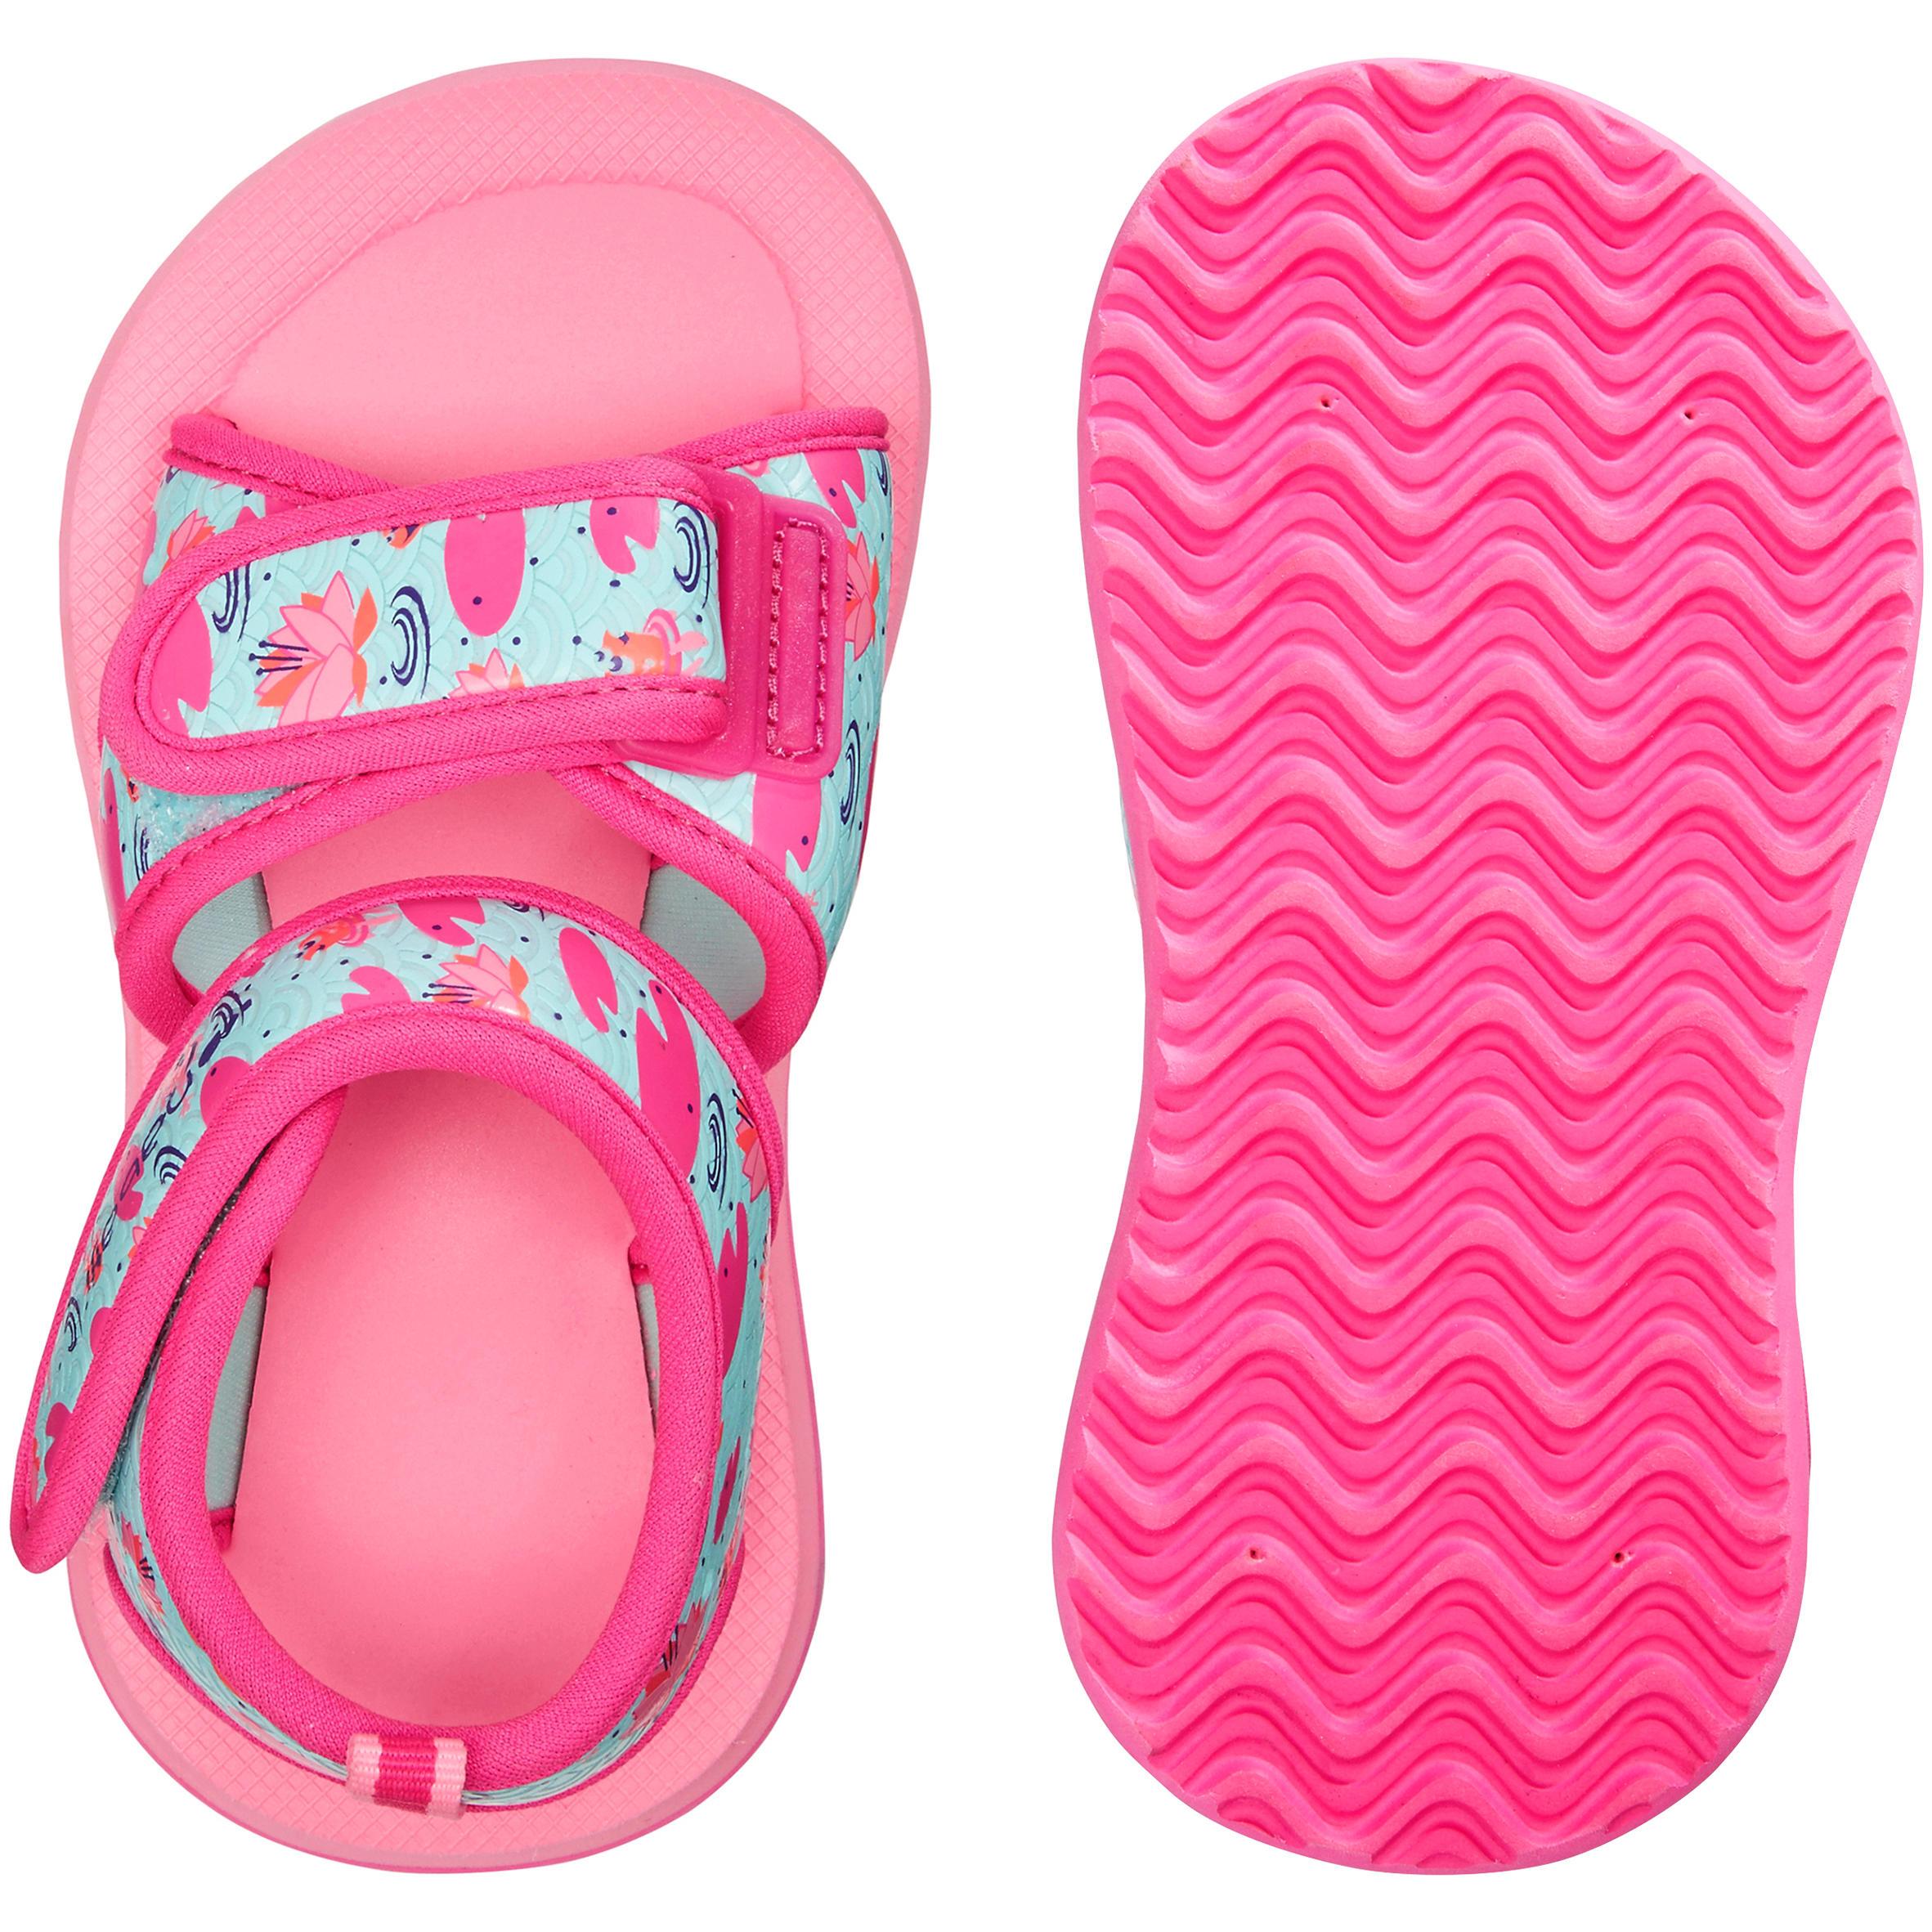 [ด่วน!! โปรโมชั่นมีจำนวนจำกัด] รองเท้าแตะเดินริมสระสำหรับเด็กเล็กรุ่น PICOLA SSP 100 (สีชมพู FLAMINGO) สำหรับ ว่ายน้ำ